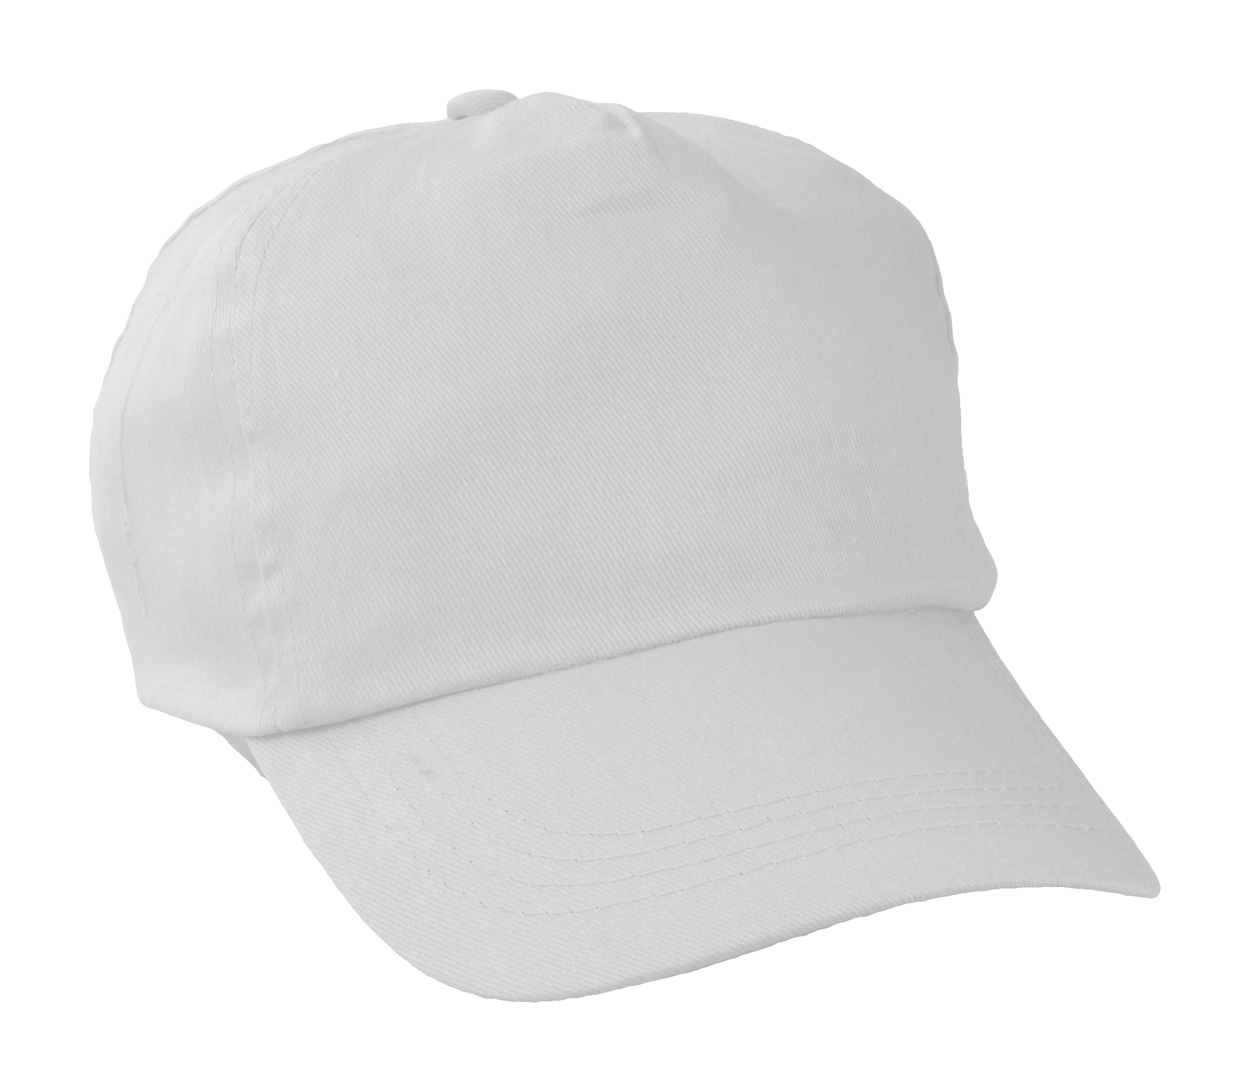 Sport baseball kapa - šilterica, bijele boje s tiskom 